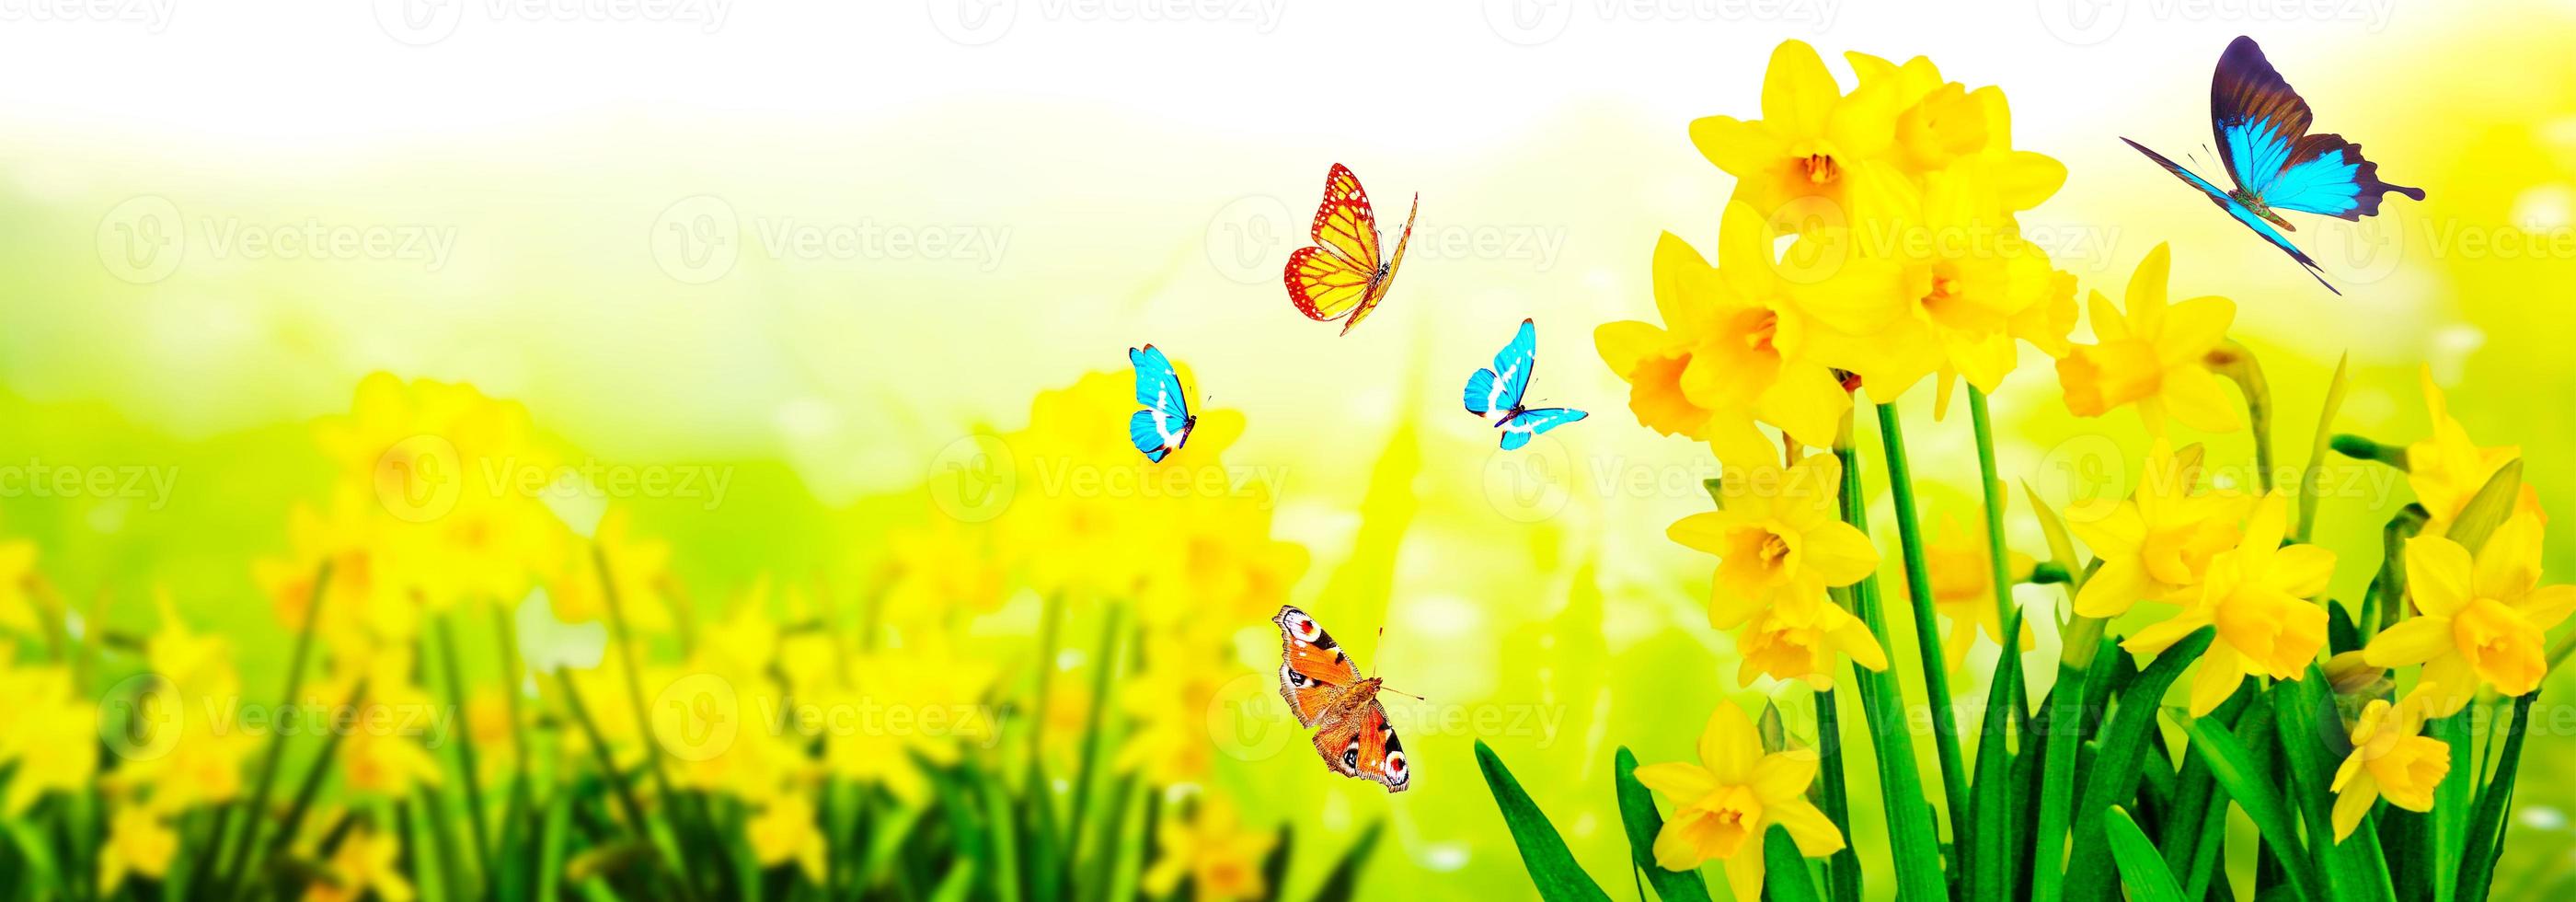 gula påskliljor och fjärilar i trädgården foto